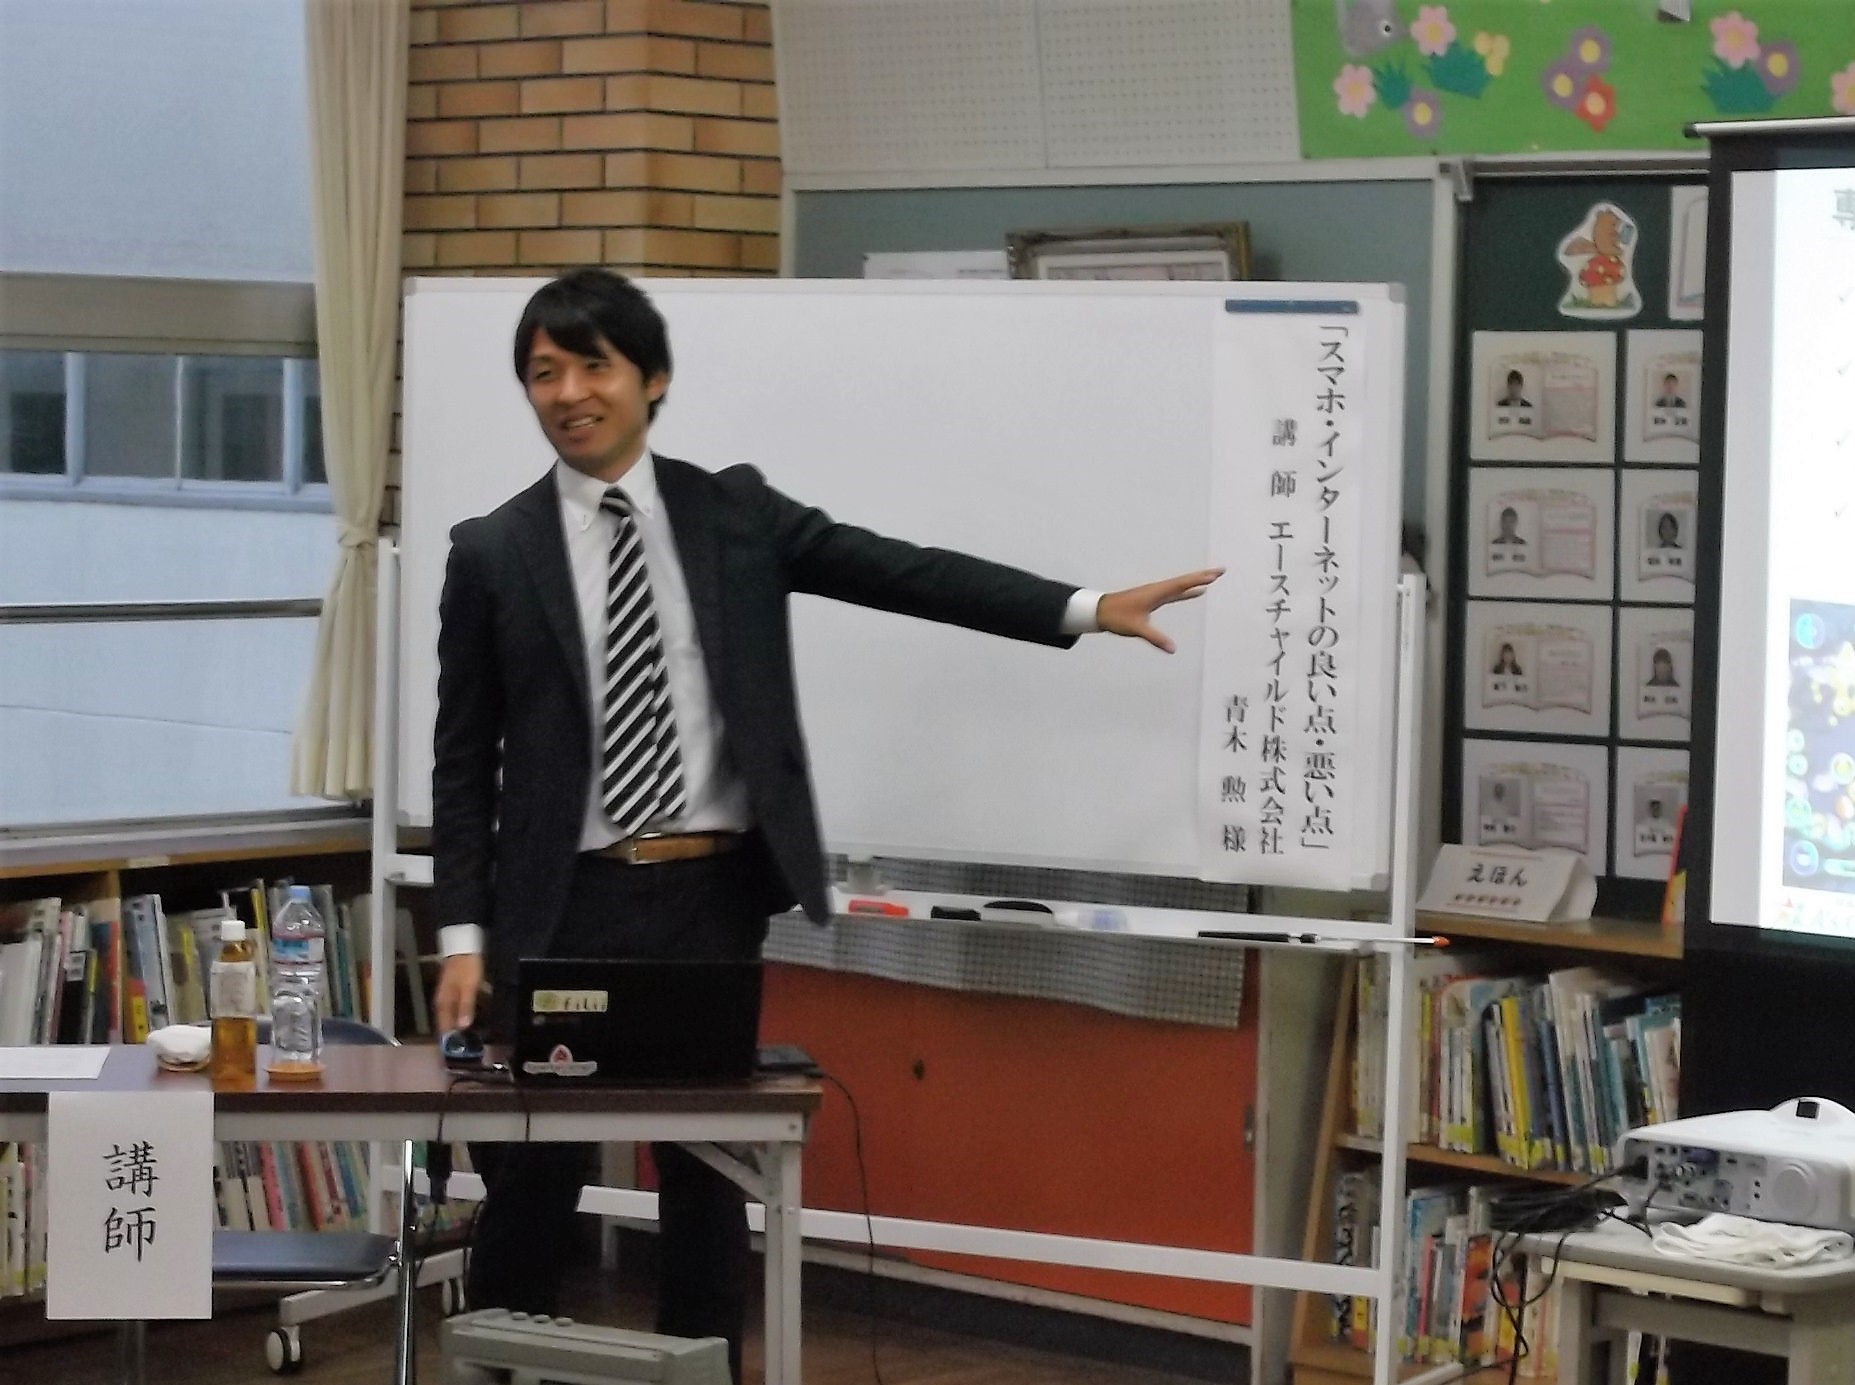 千葉県佐倉市立佐倉東小学校で保護者・教員・地域の方々向けに啓発講演を実施いたしました